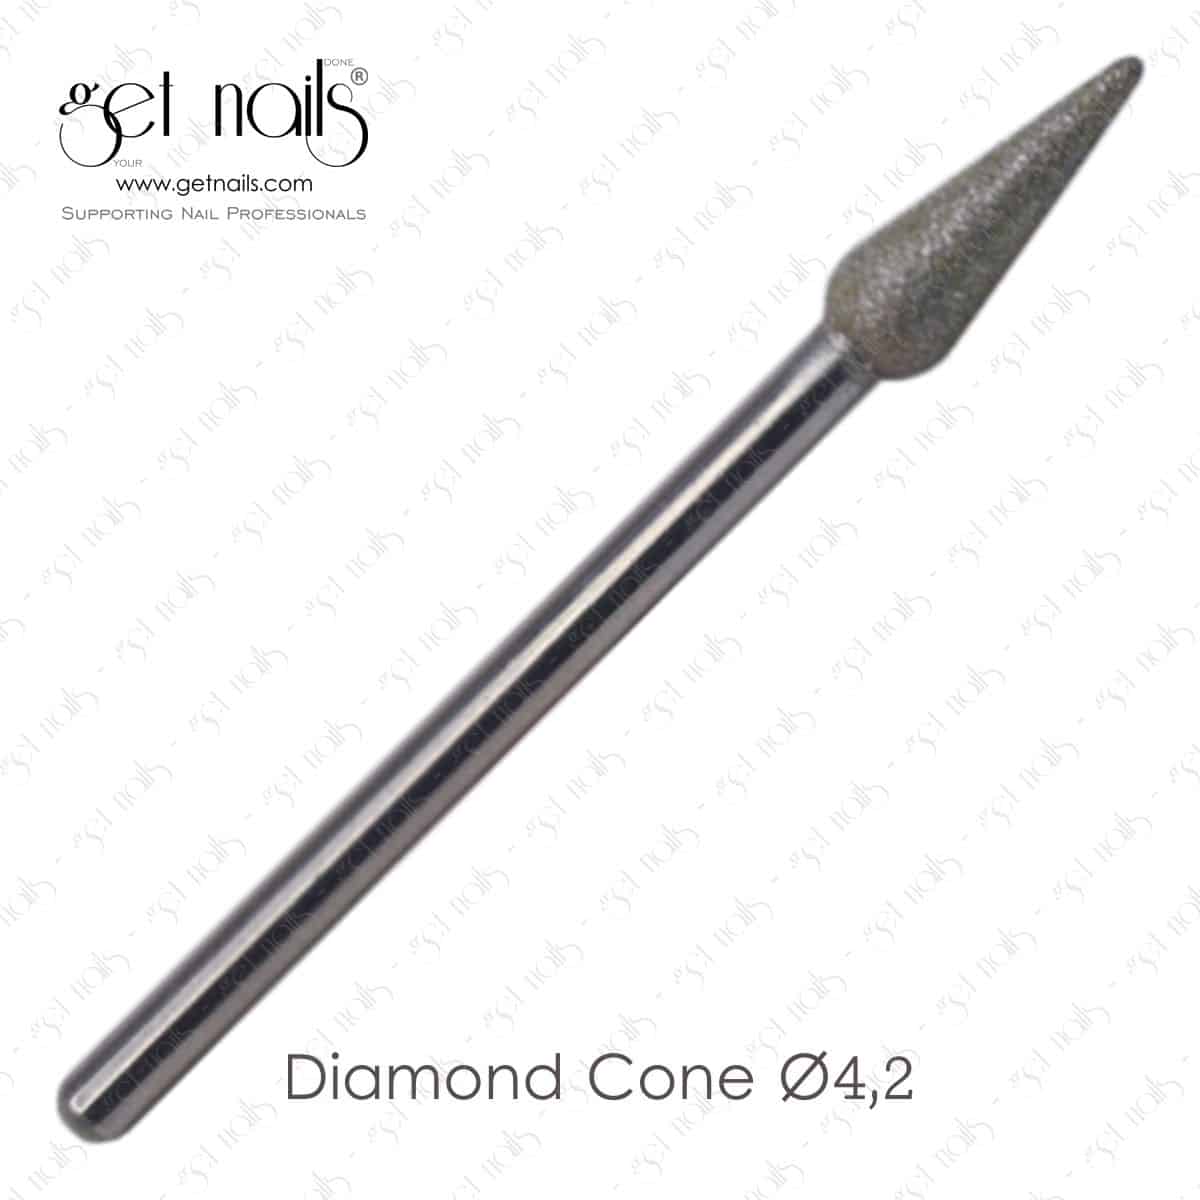 Get Nails Austria - Marószerszám Diamond Cone Ø4,2